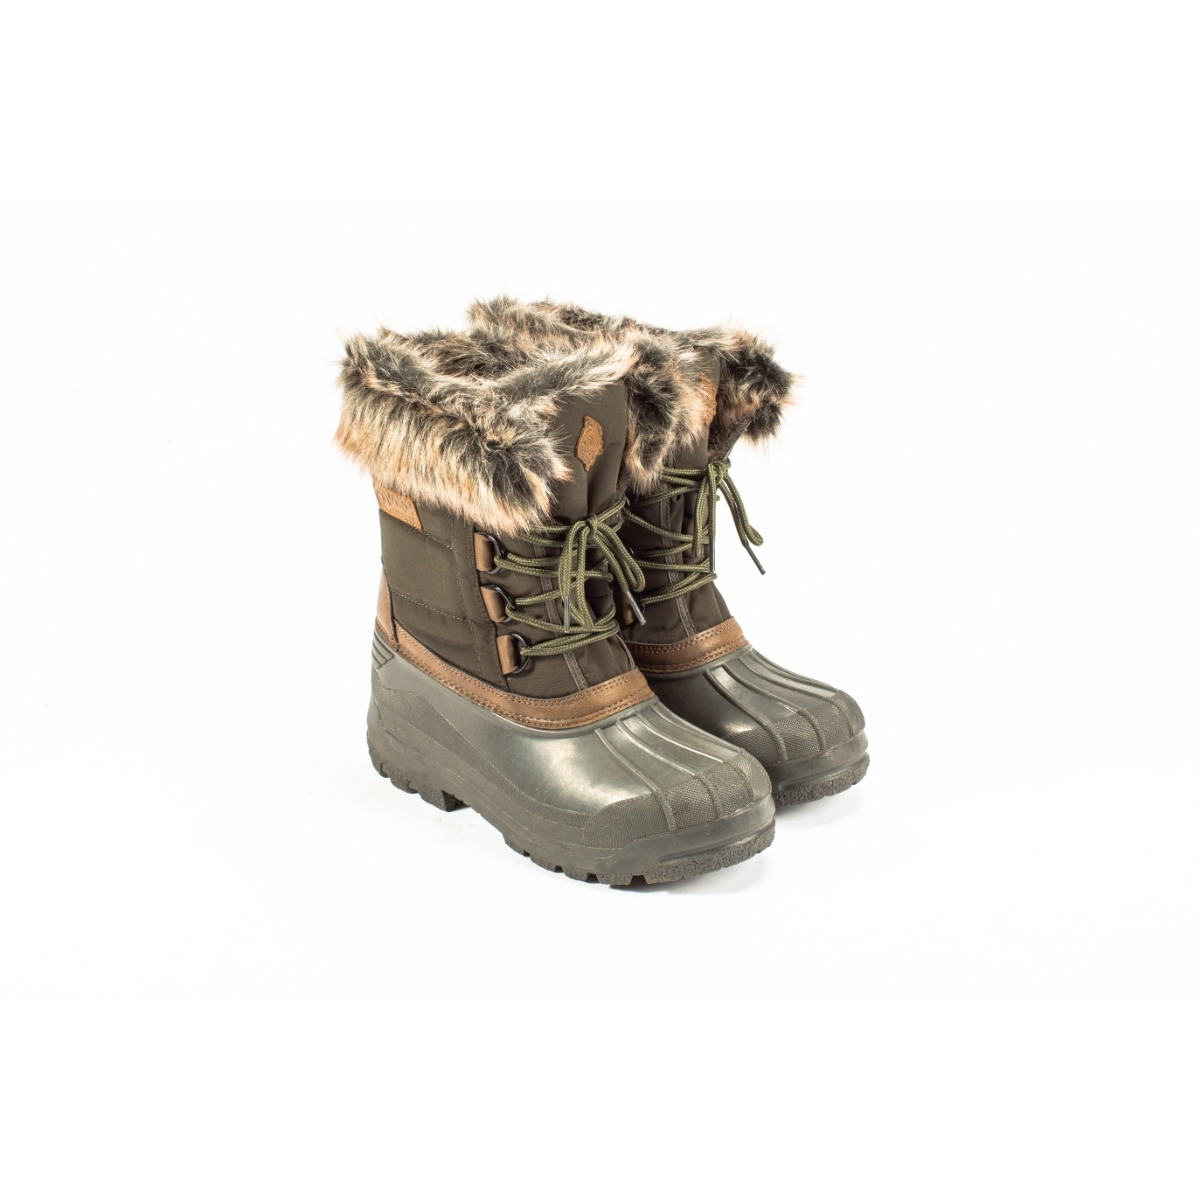 Nash Zt Polar Boots - Size 7